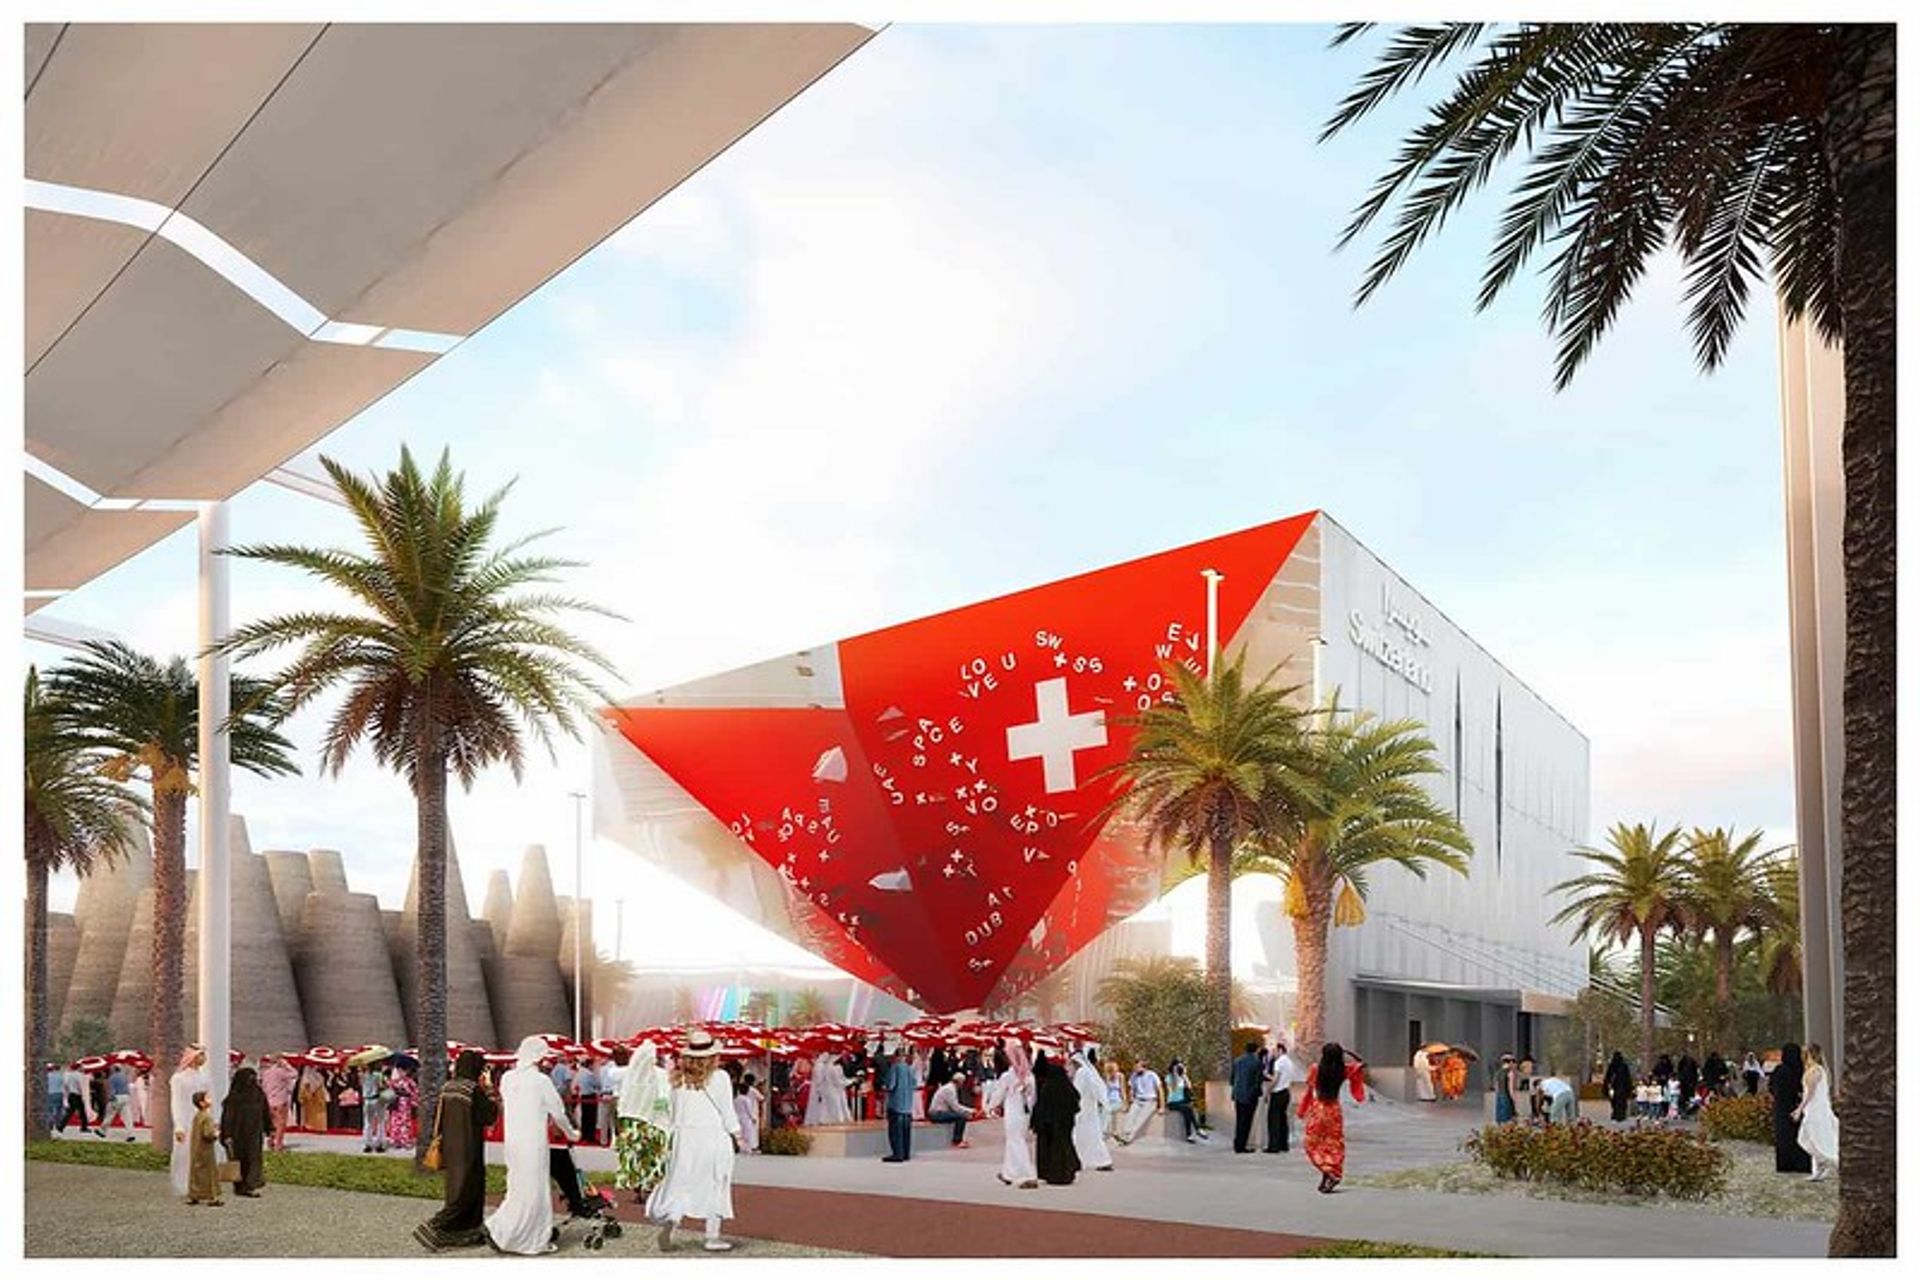 Il rendering della vista frontale del Padiglione Svizzero all'Expo Dubai 2020